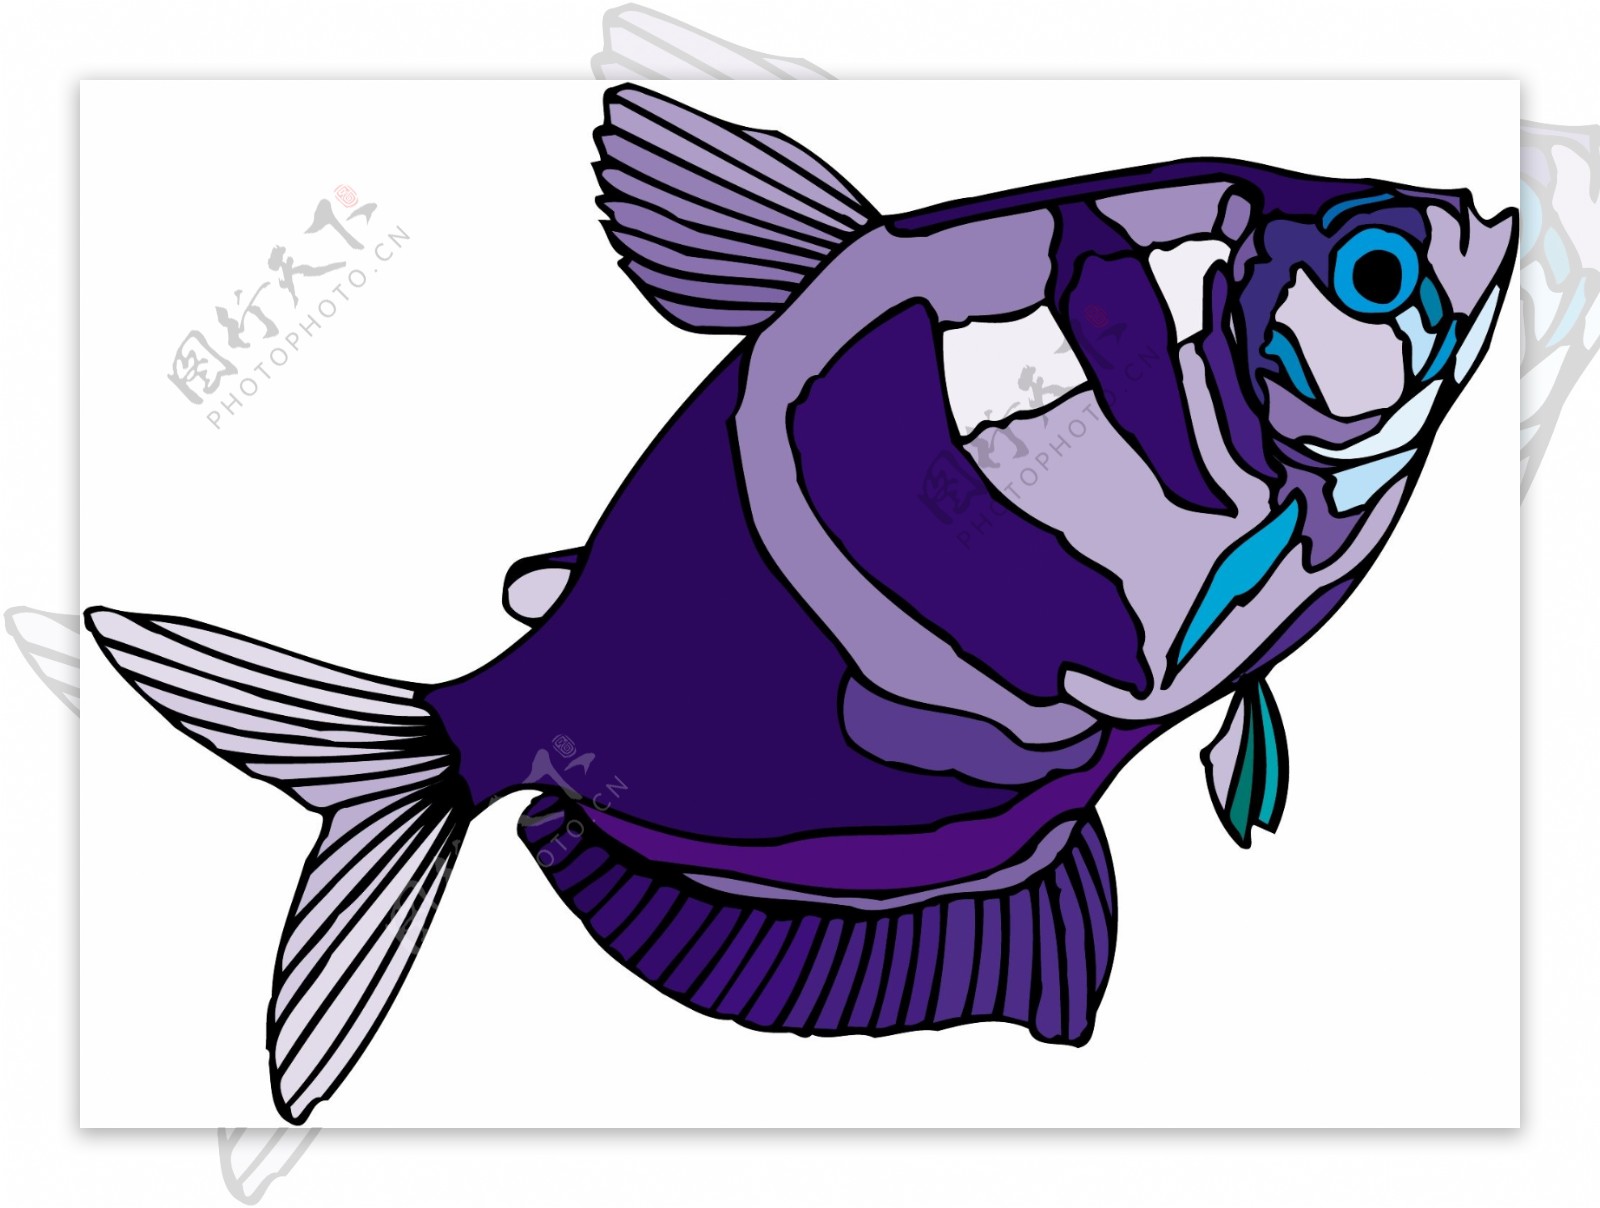 五彩小鱼水生动物矢量素材EPS格式0063